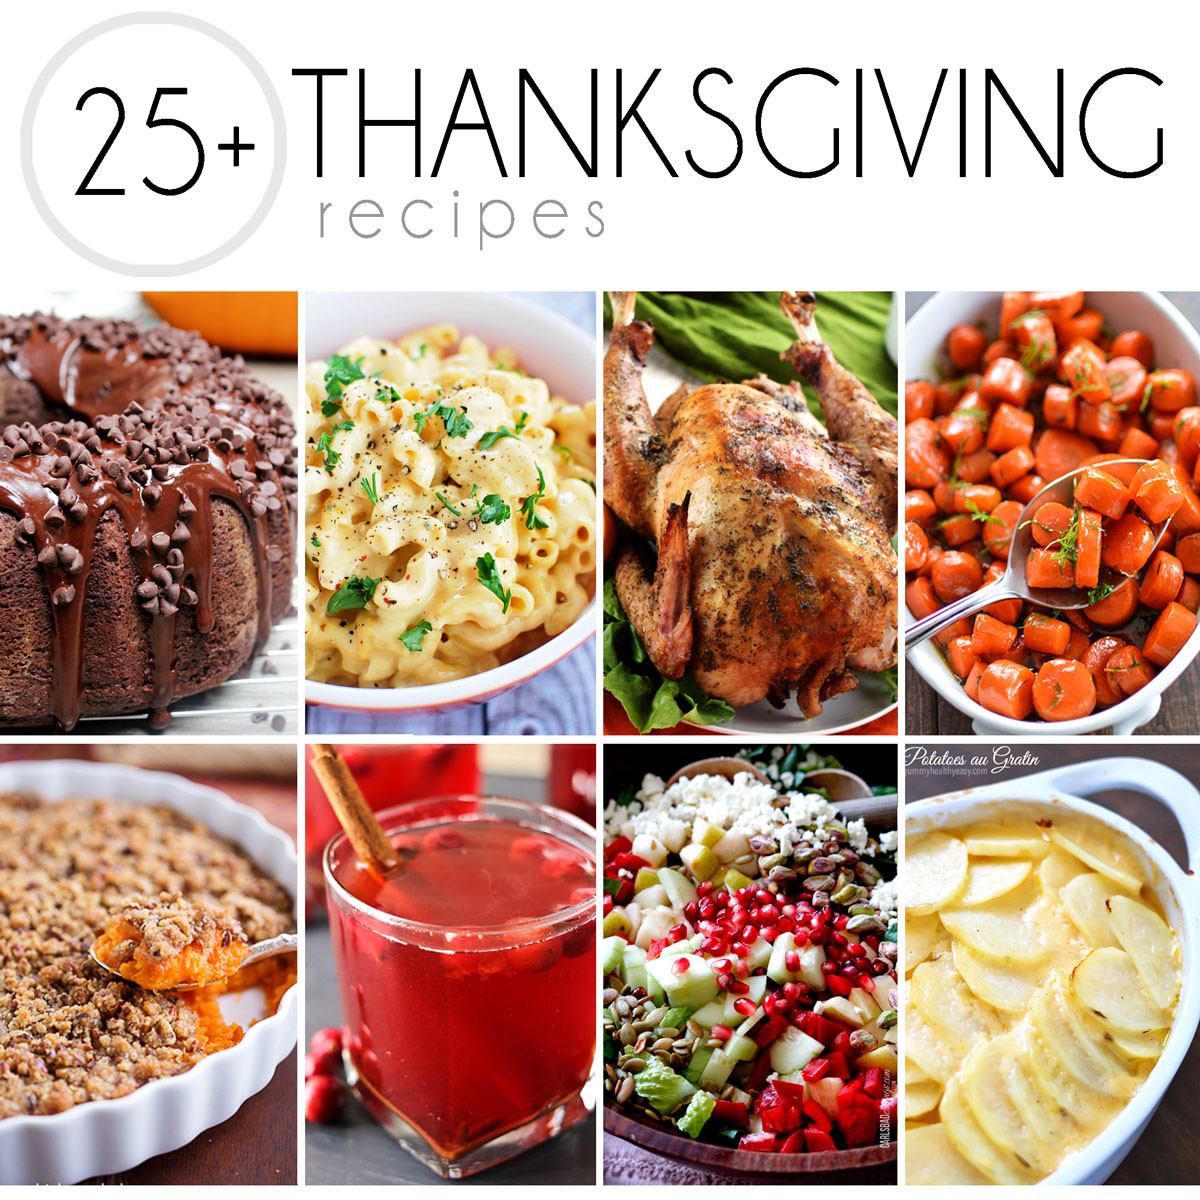 Turkey Recipe For Thanksgiving Dinner
 25 Thanksgiving Recipes